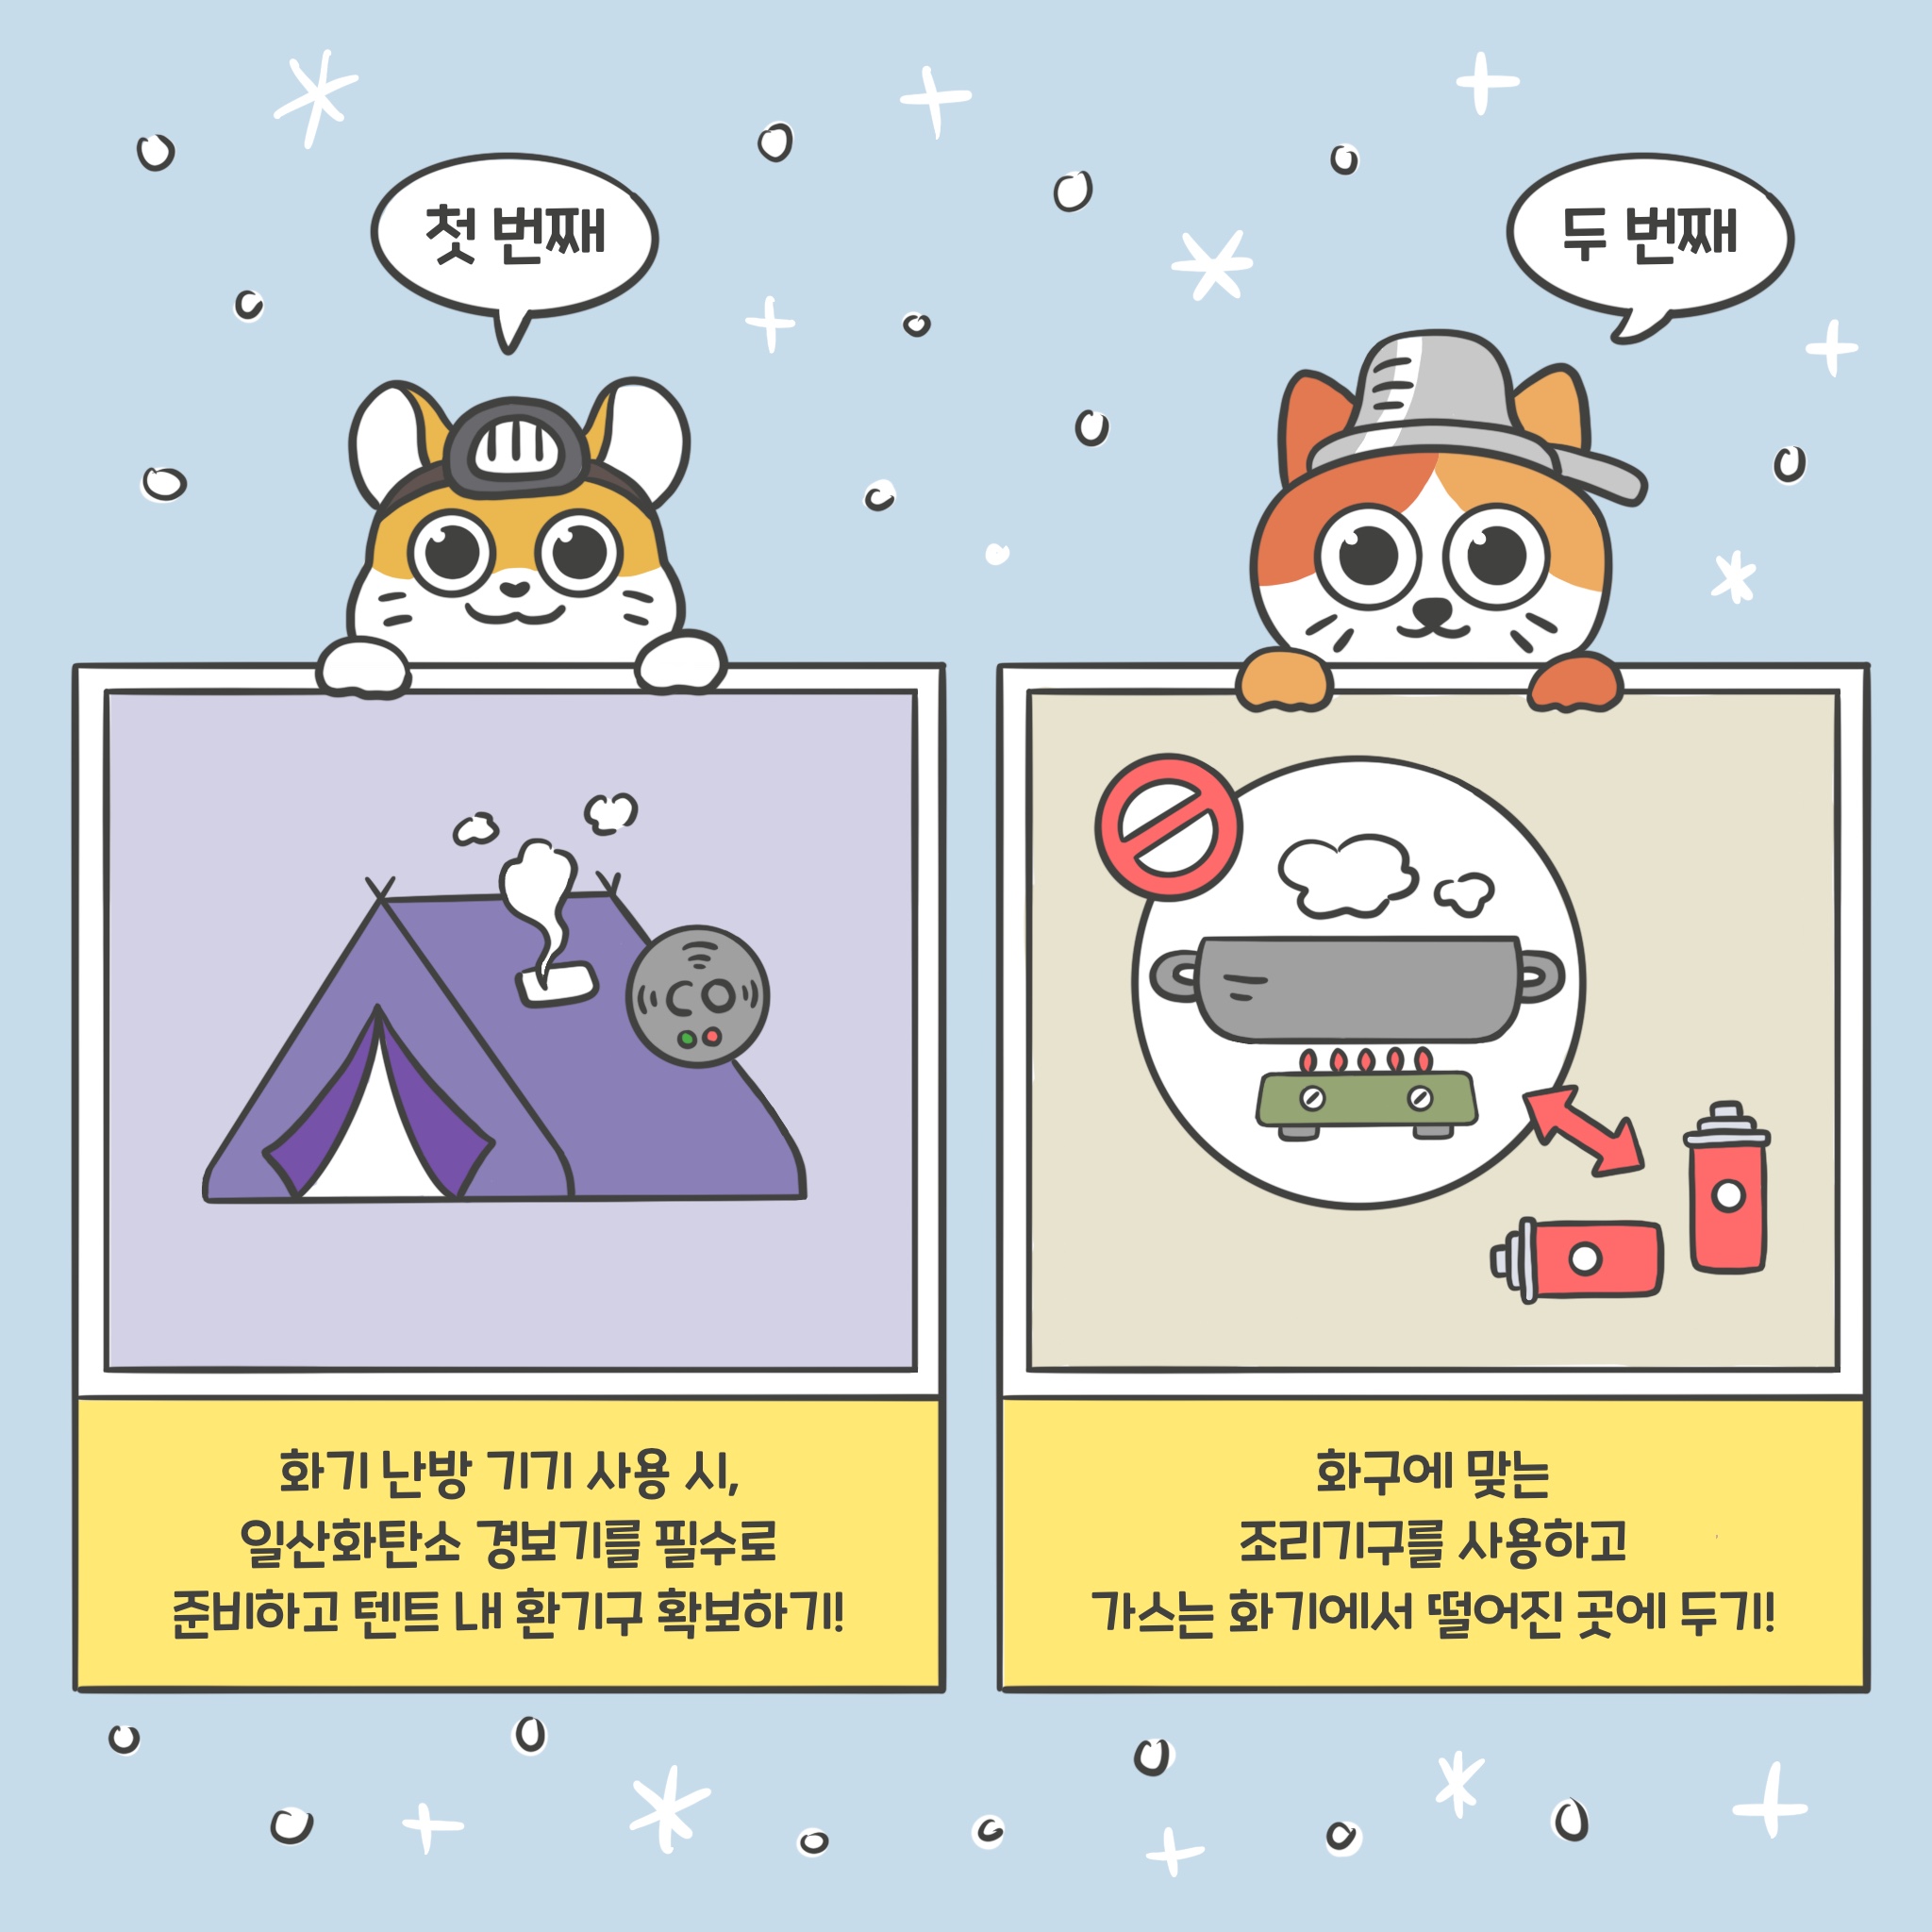 동계 캠핑 안전수칙 : 한국관광공사 고캠핑 웹툰 다운로드